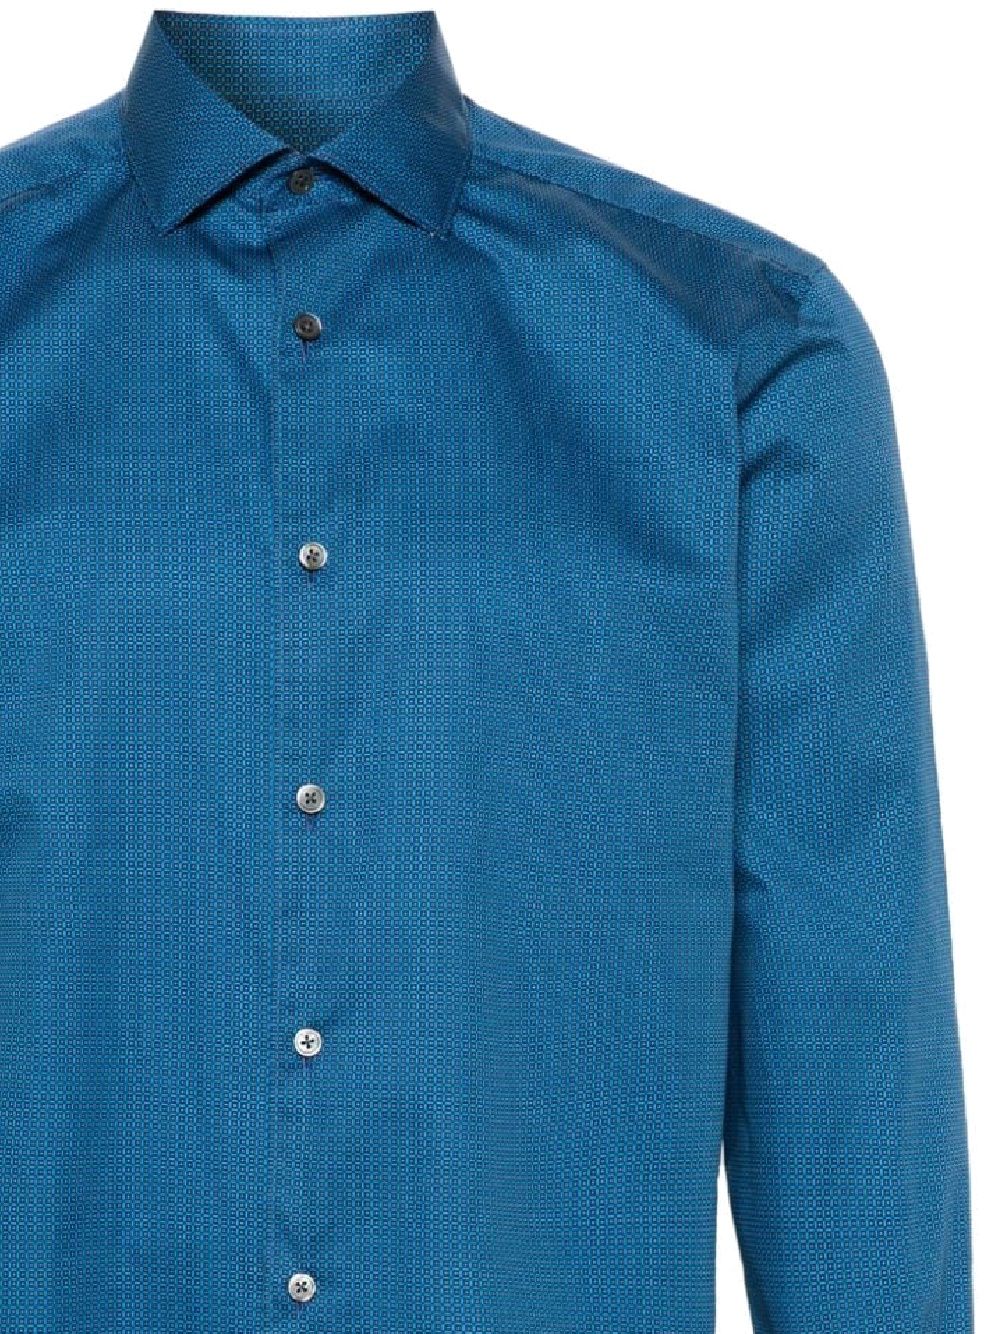 Camicia azzurra formale